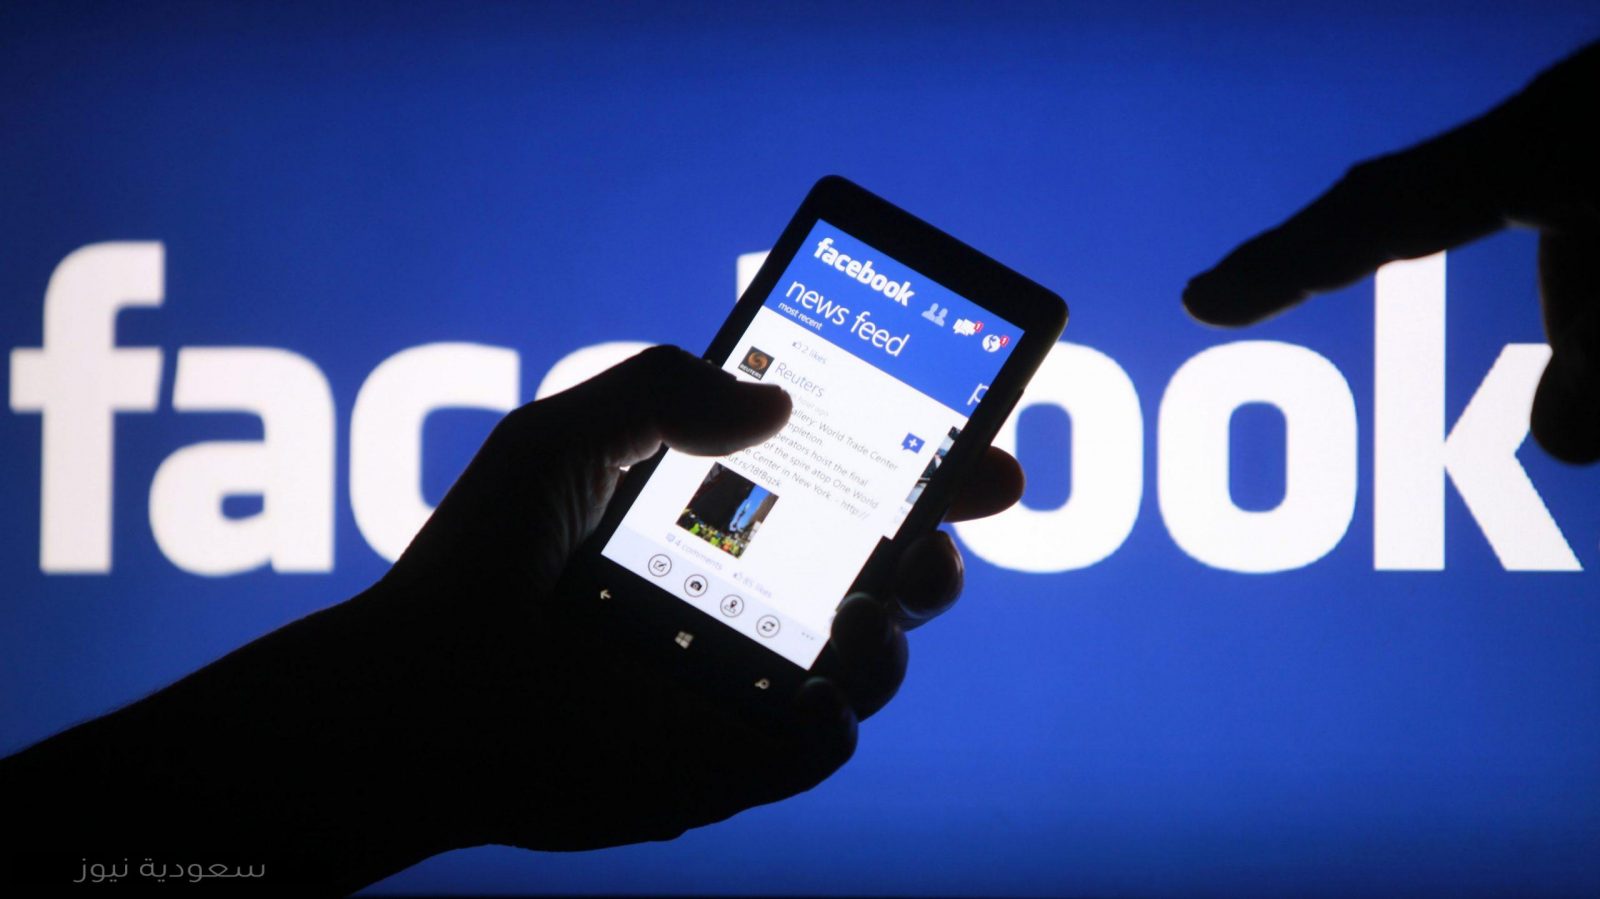 الدخول إلى فيسبوك Facebook دون تسجيل الحساب